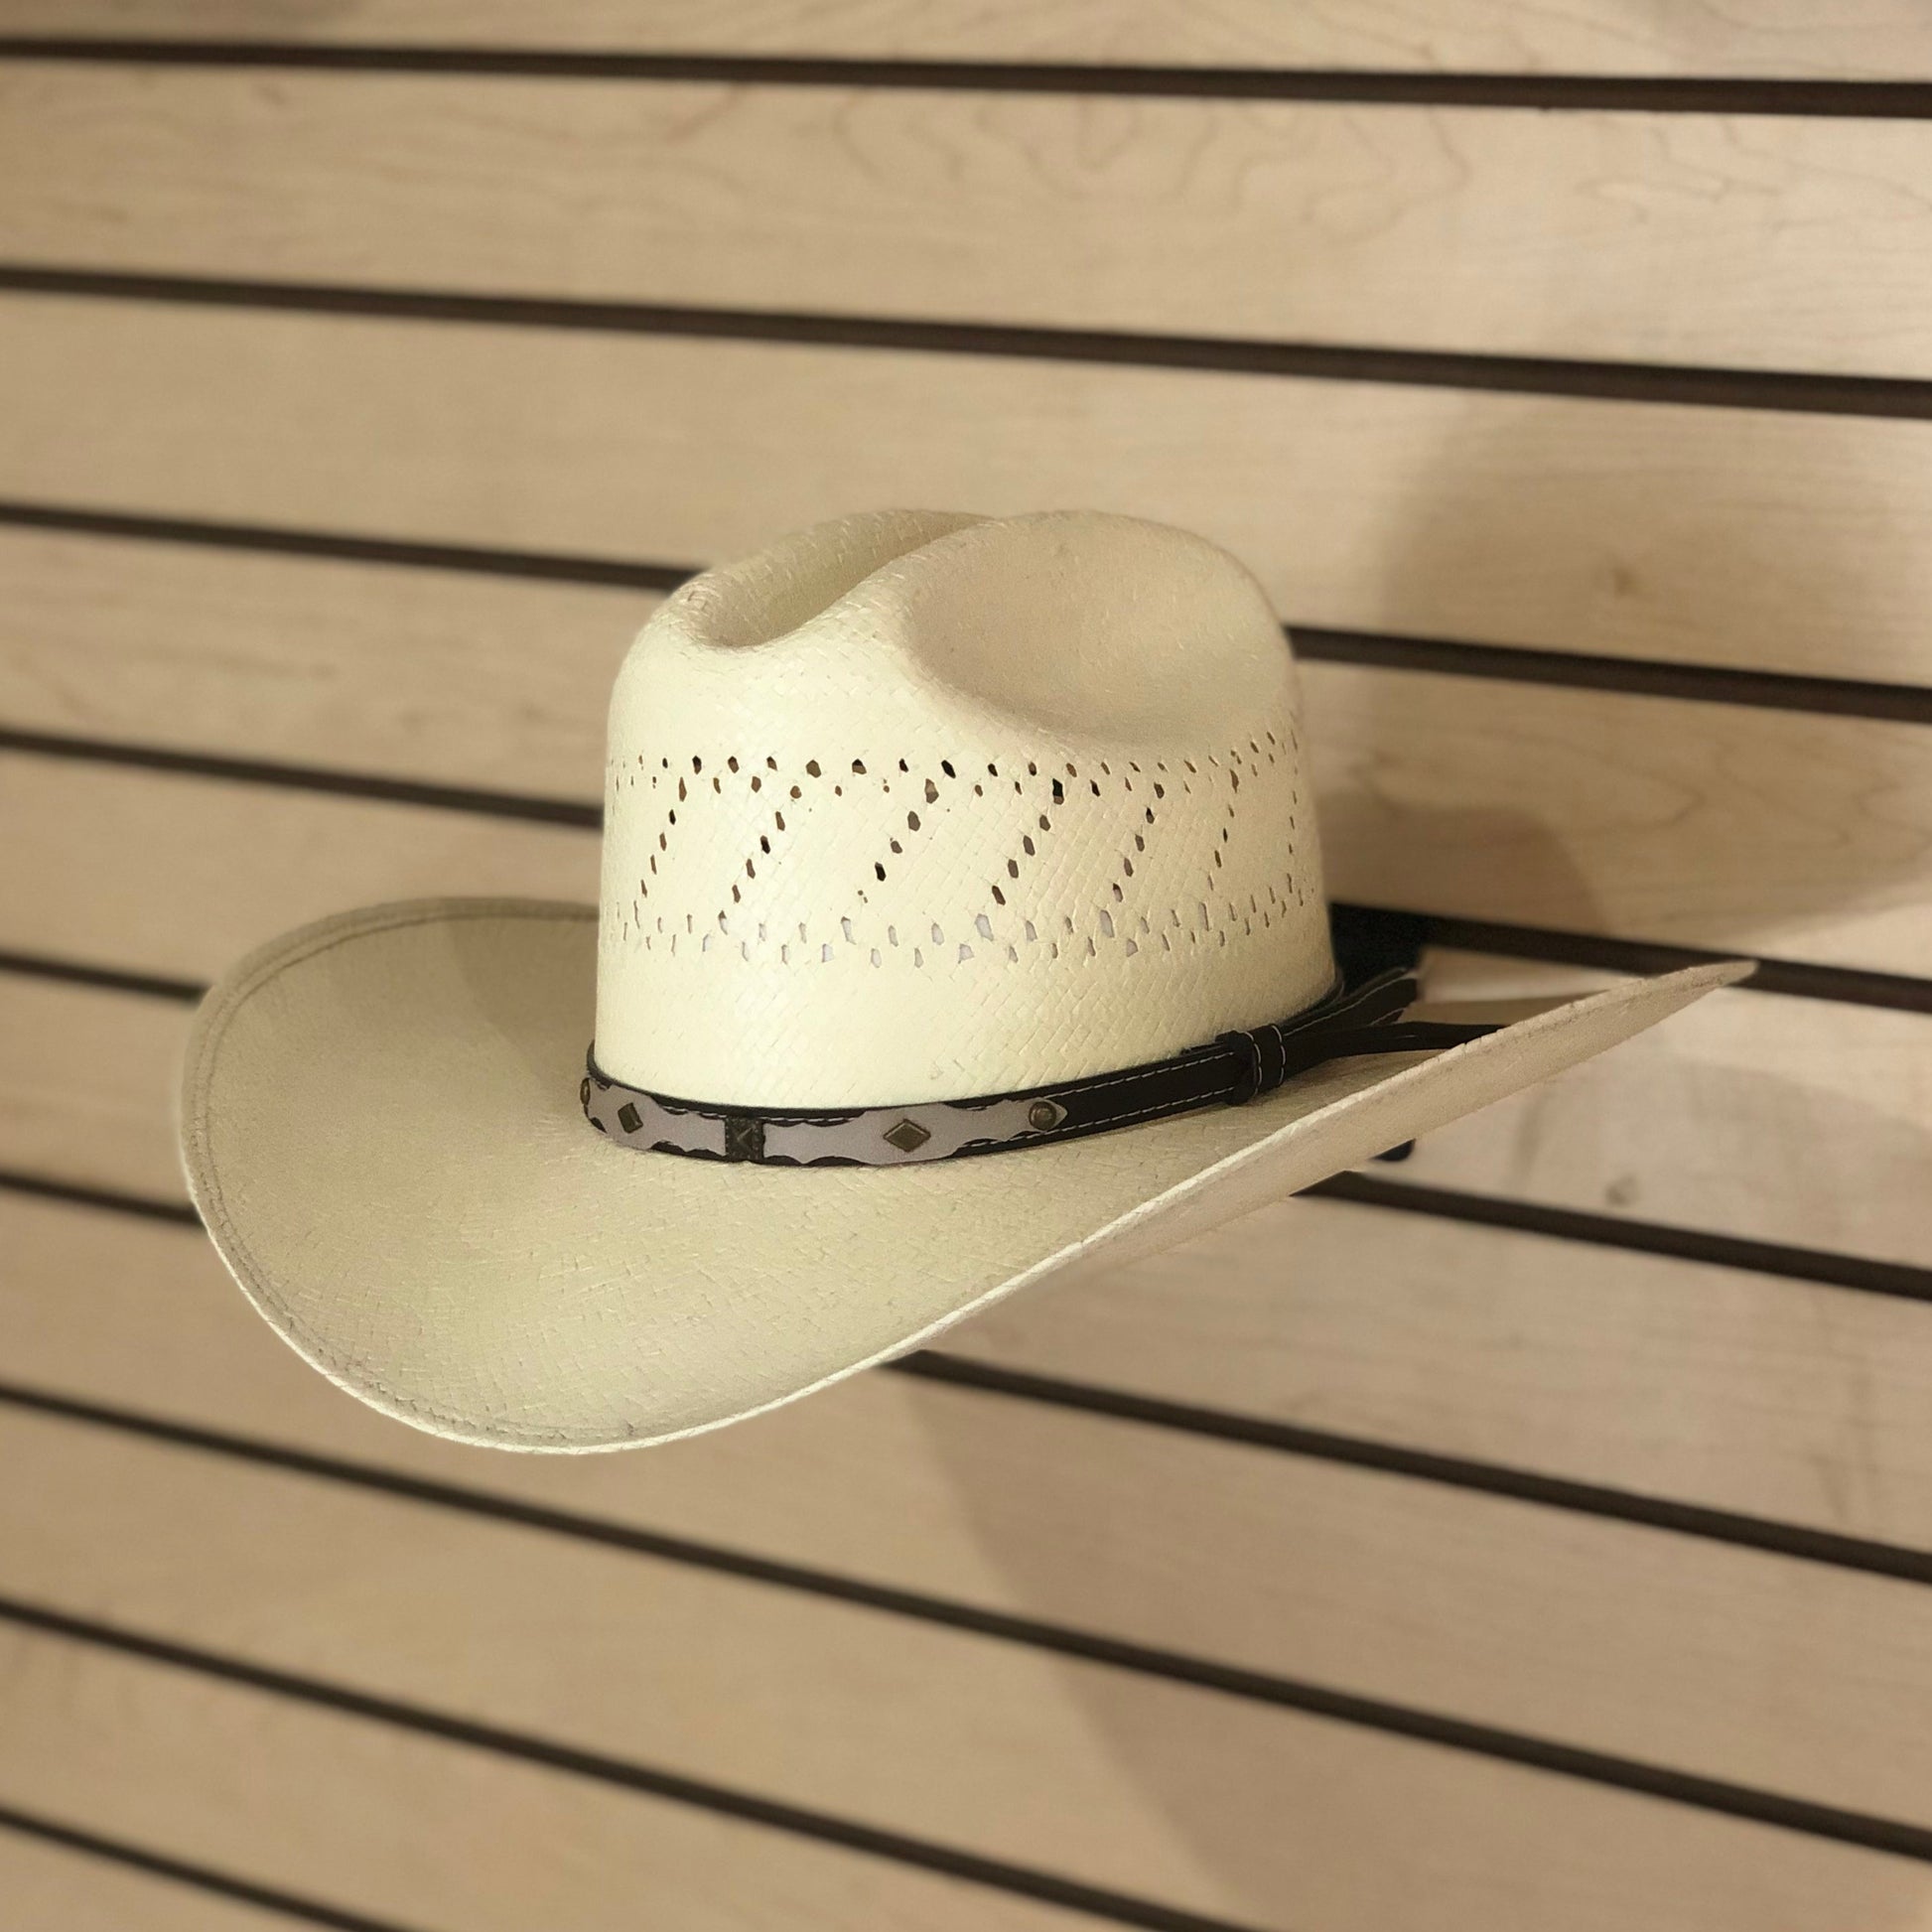 sombrero vaquero, randado con respiracion, toyo, 10x, falda grande, copa baja, toquilla cafe, sombrero americano.